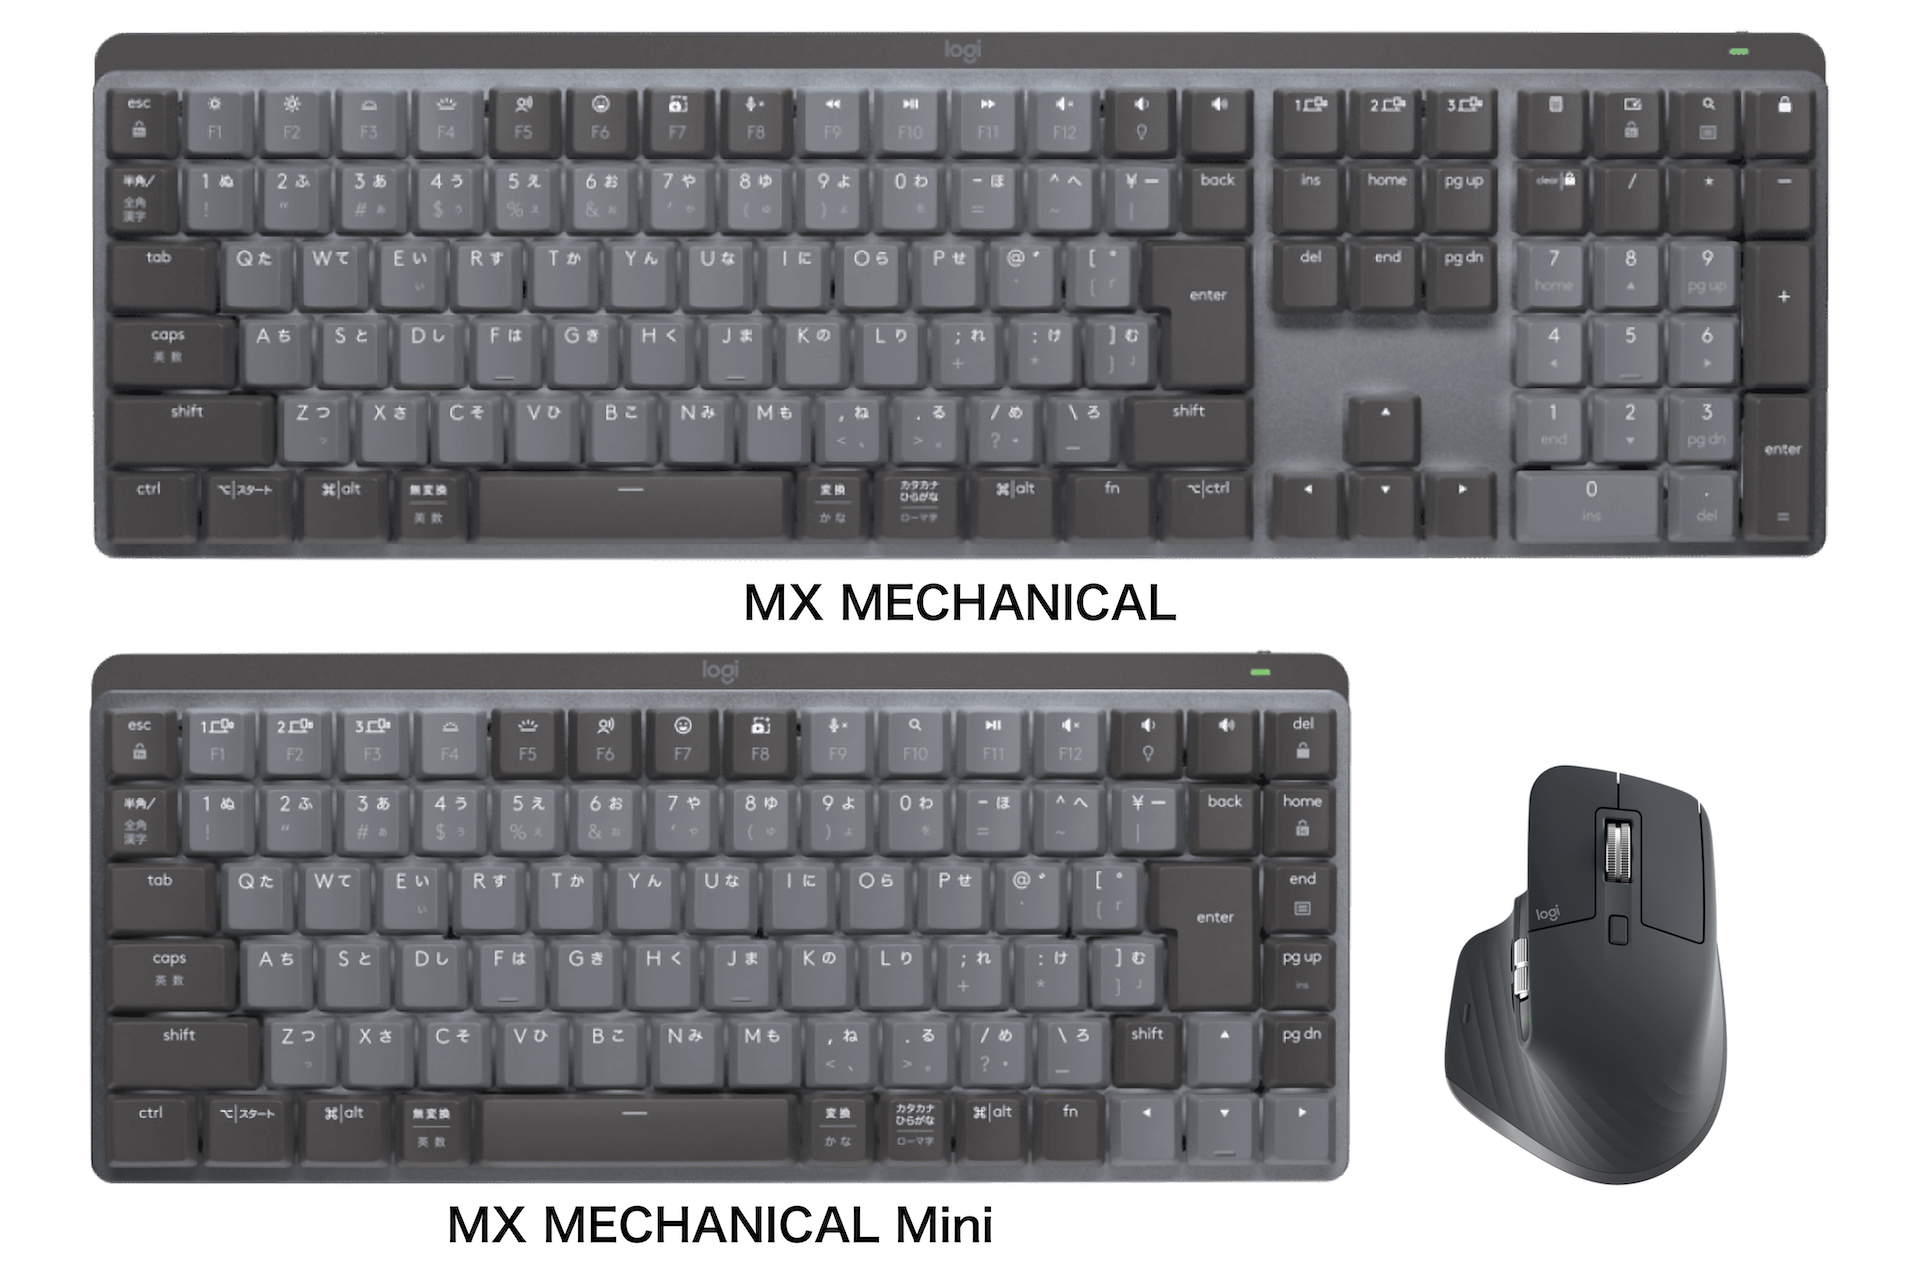 MX MECHANICAL Mini